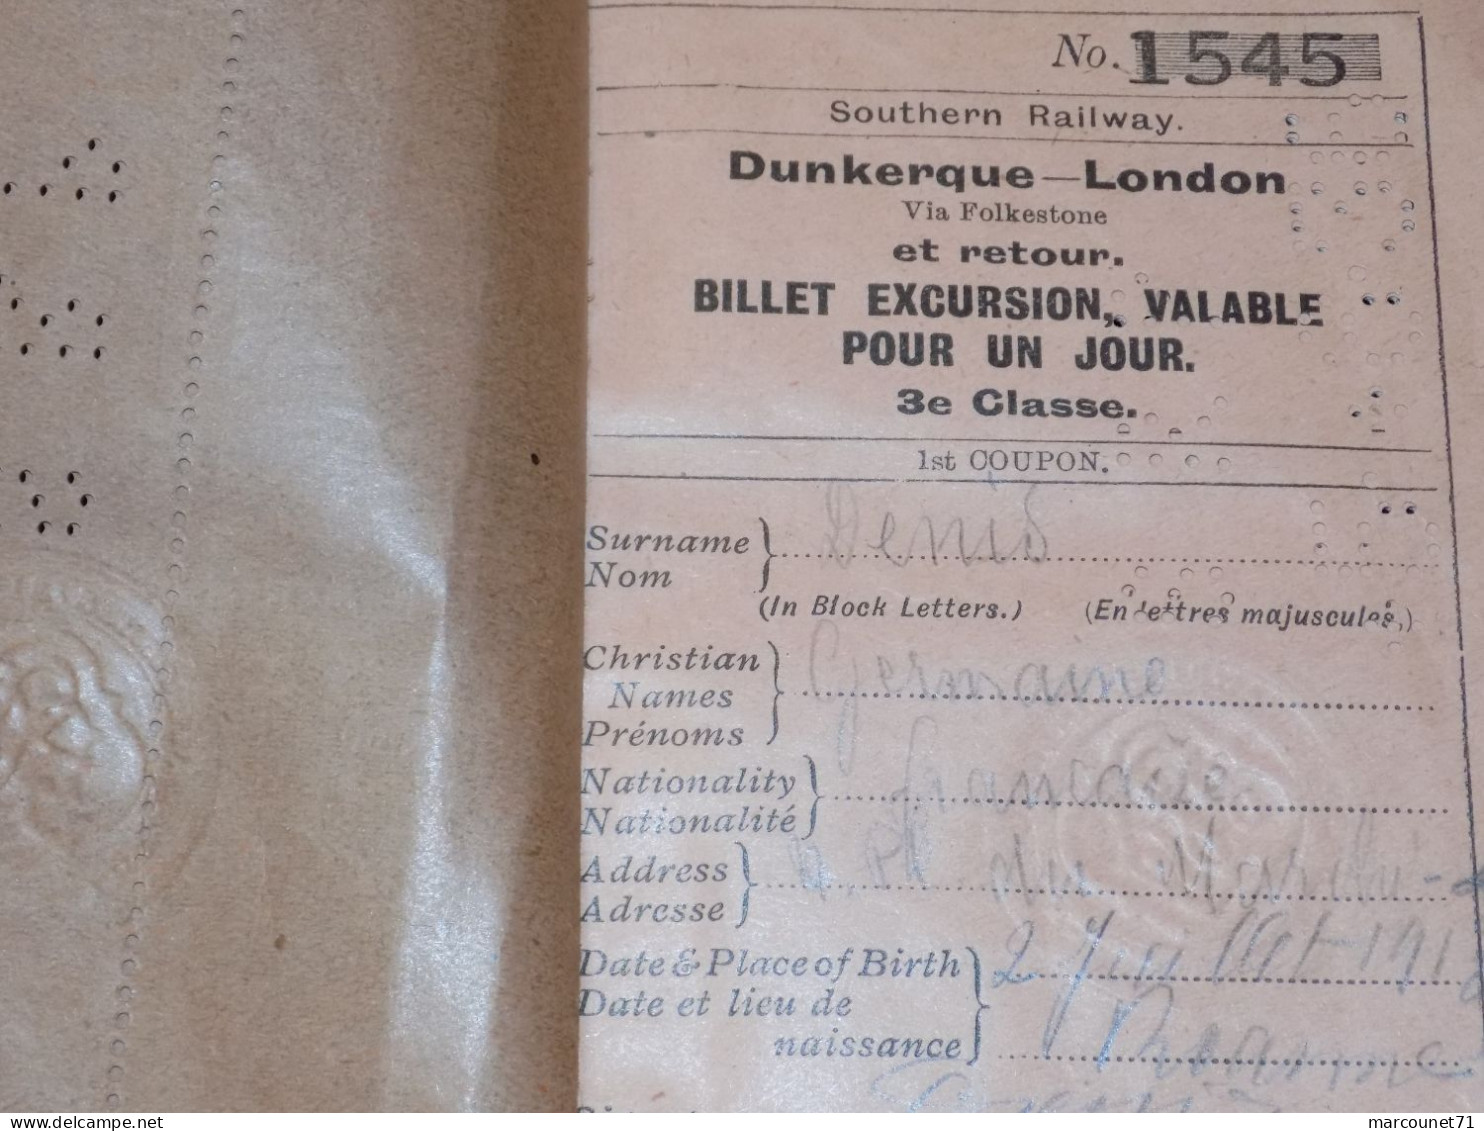 ANCIEN ET RARE DOCUMENT BILLET D'EXCURSION DUNKERQUE LONDON VIA FOLKESTONE 1913 - Transports